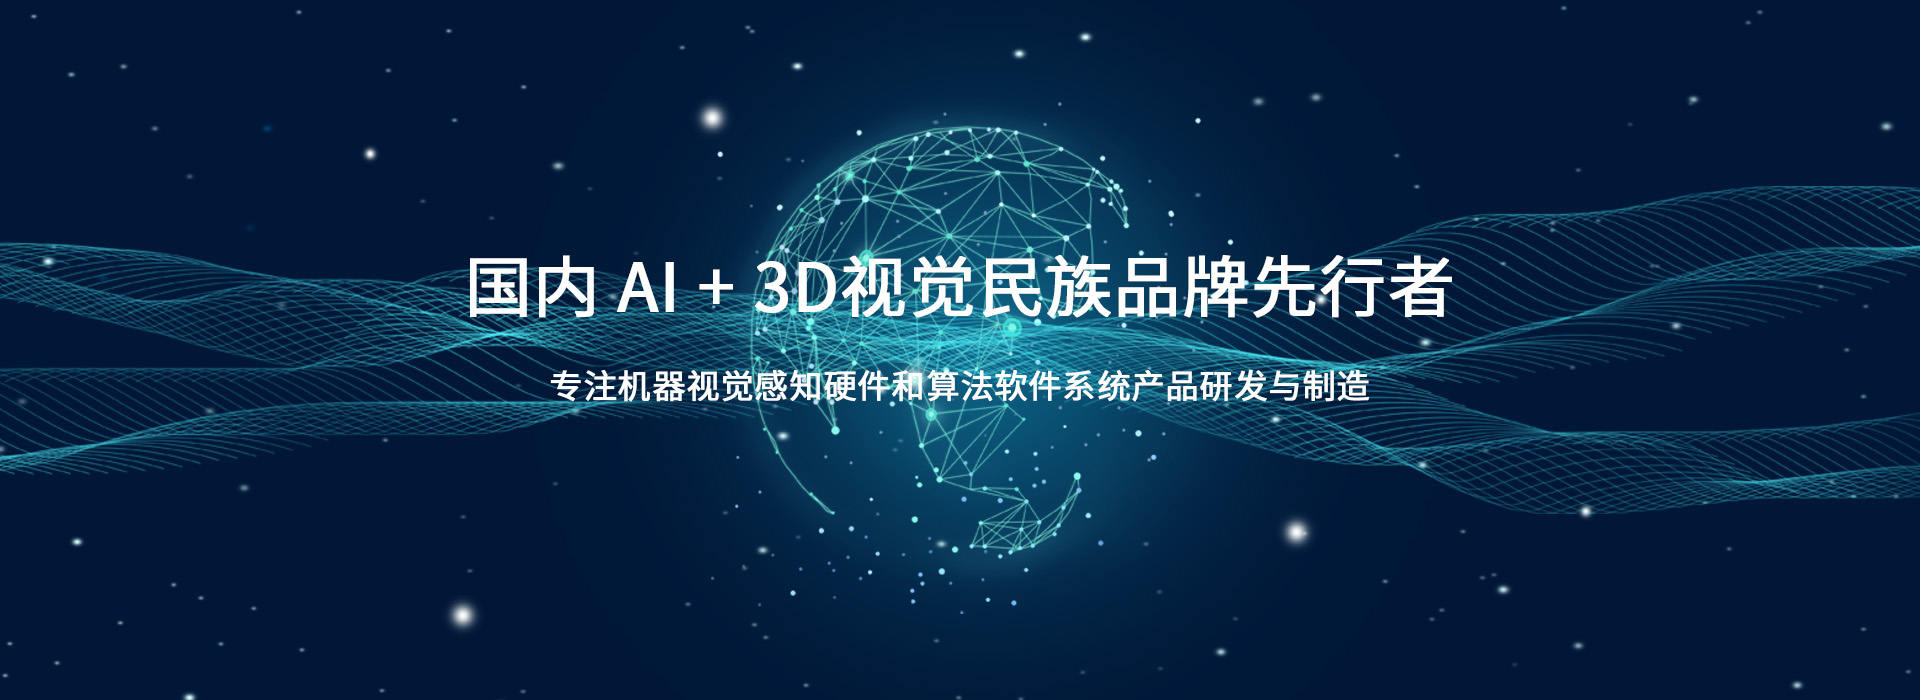 人加智能科技丨AI+3D相机和机器视觉科技公司